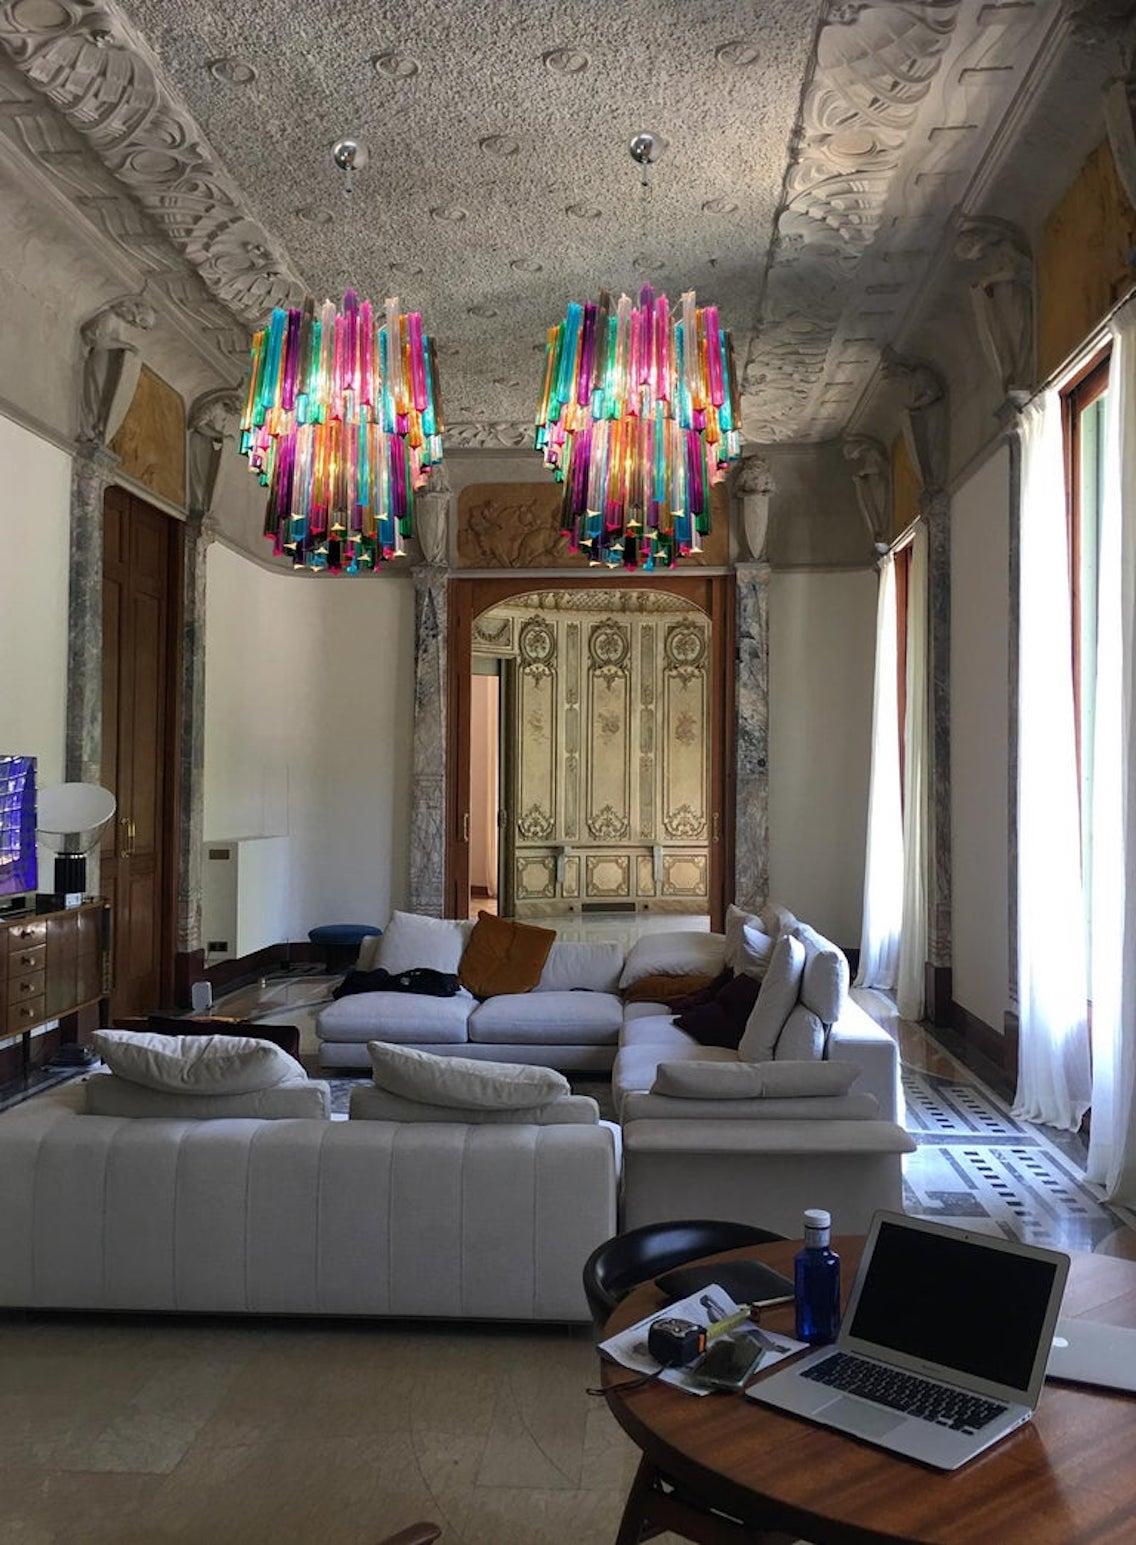 Fantastique Trio de lustres de Murano, chacun composé de 107 prismes multicolores en cristal de Murano dans une structure en métal nickelé. Les verres sont transparents, bleus, fumés, violets, verts, jaunes et roses.
Dimensions : 55.140 cm de